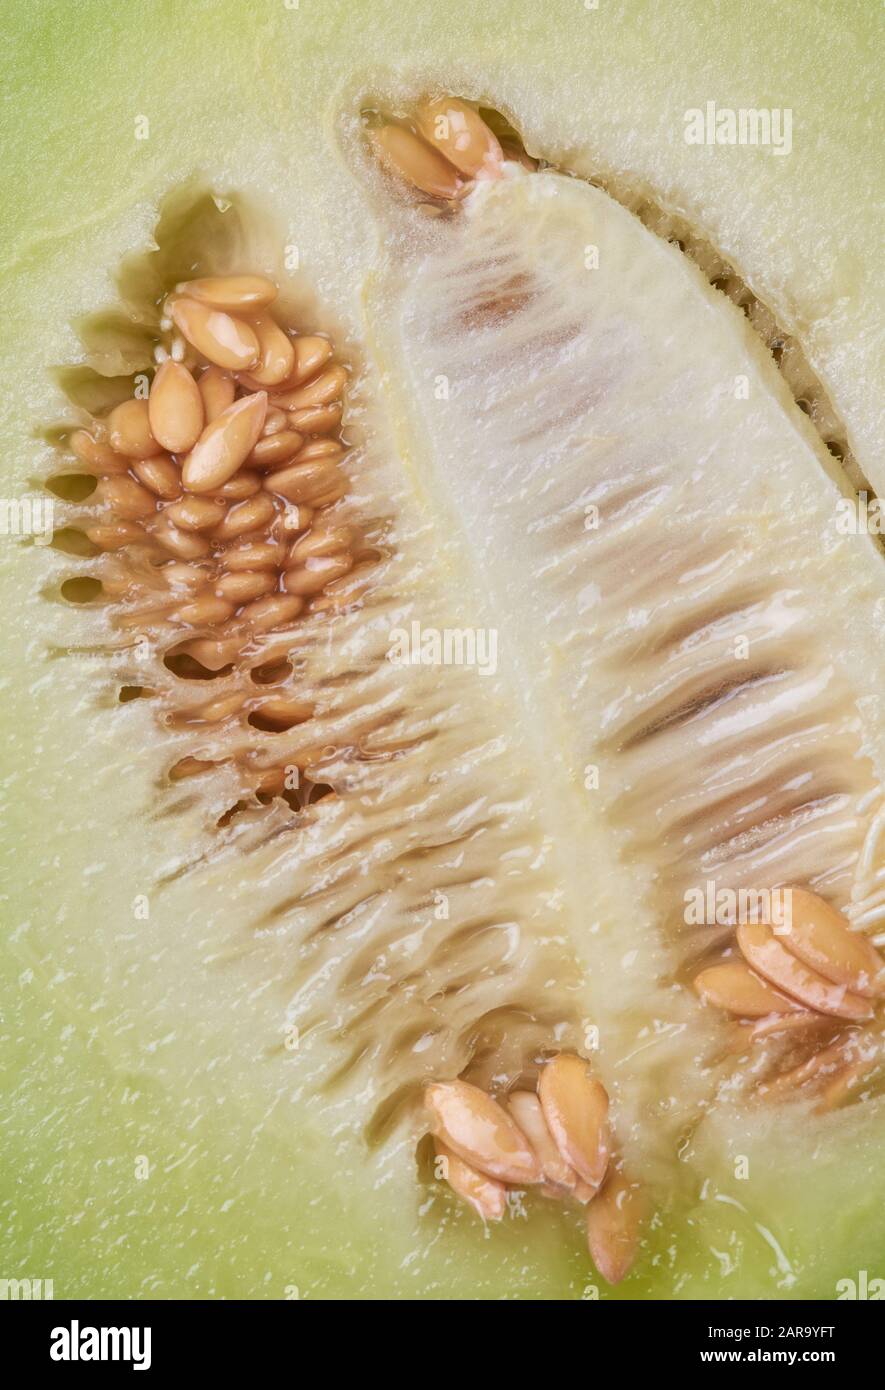 Background images of cantaloupe seeds Stock Photo